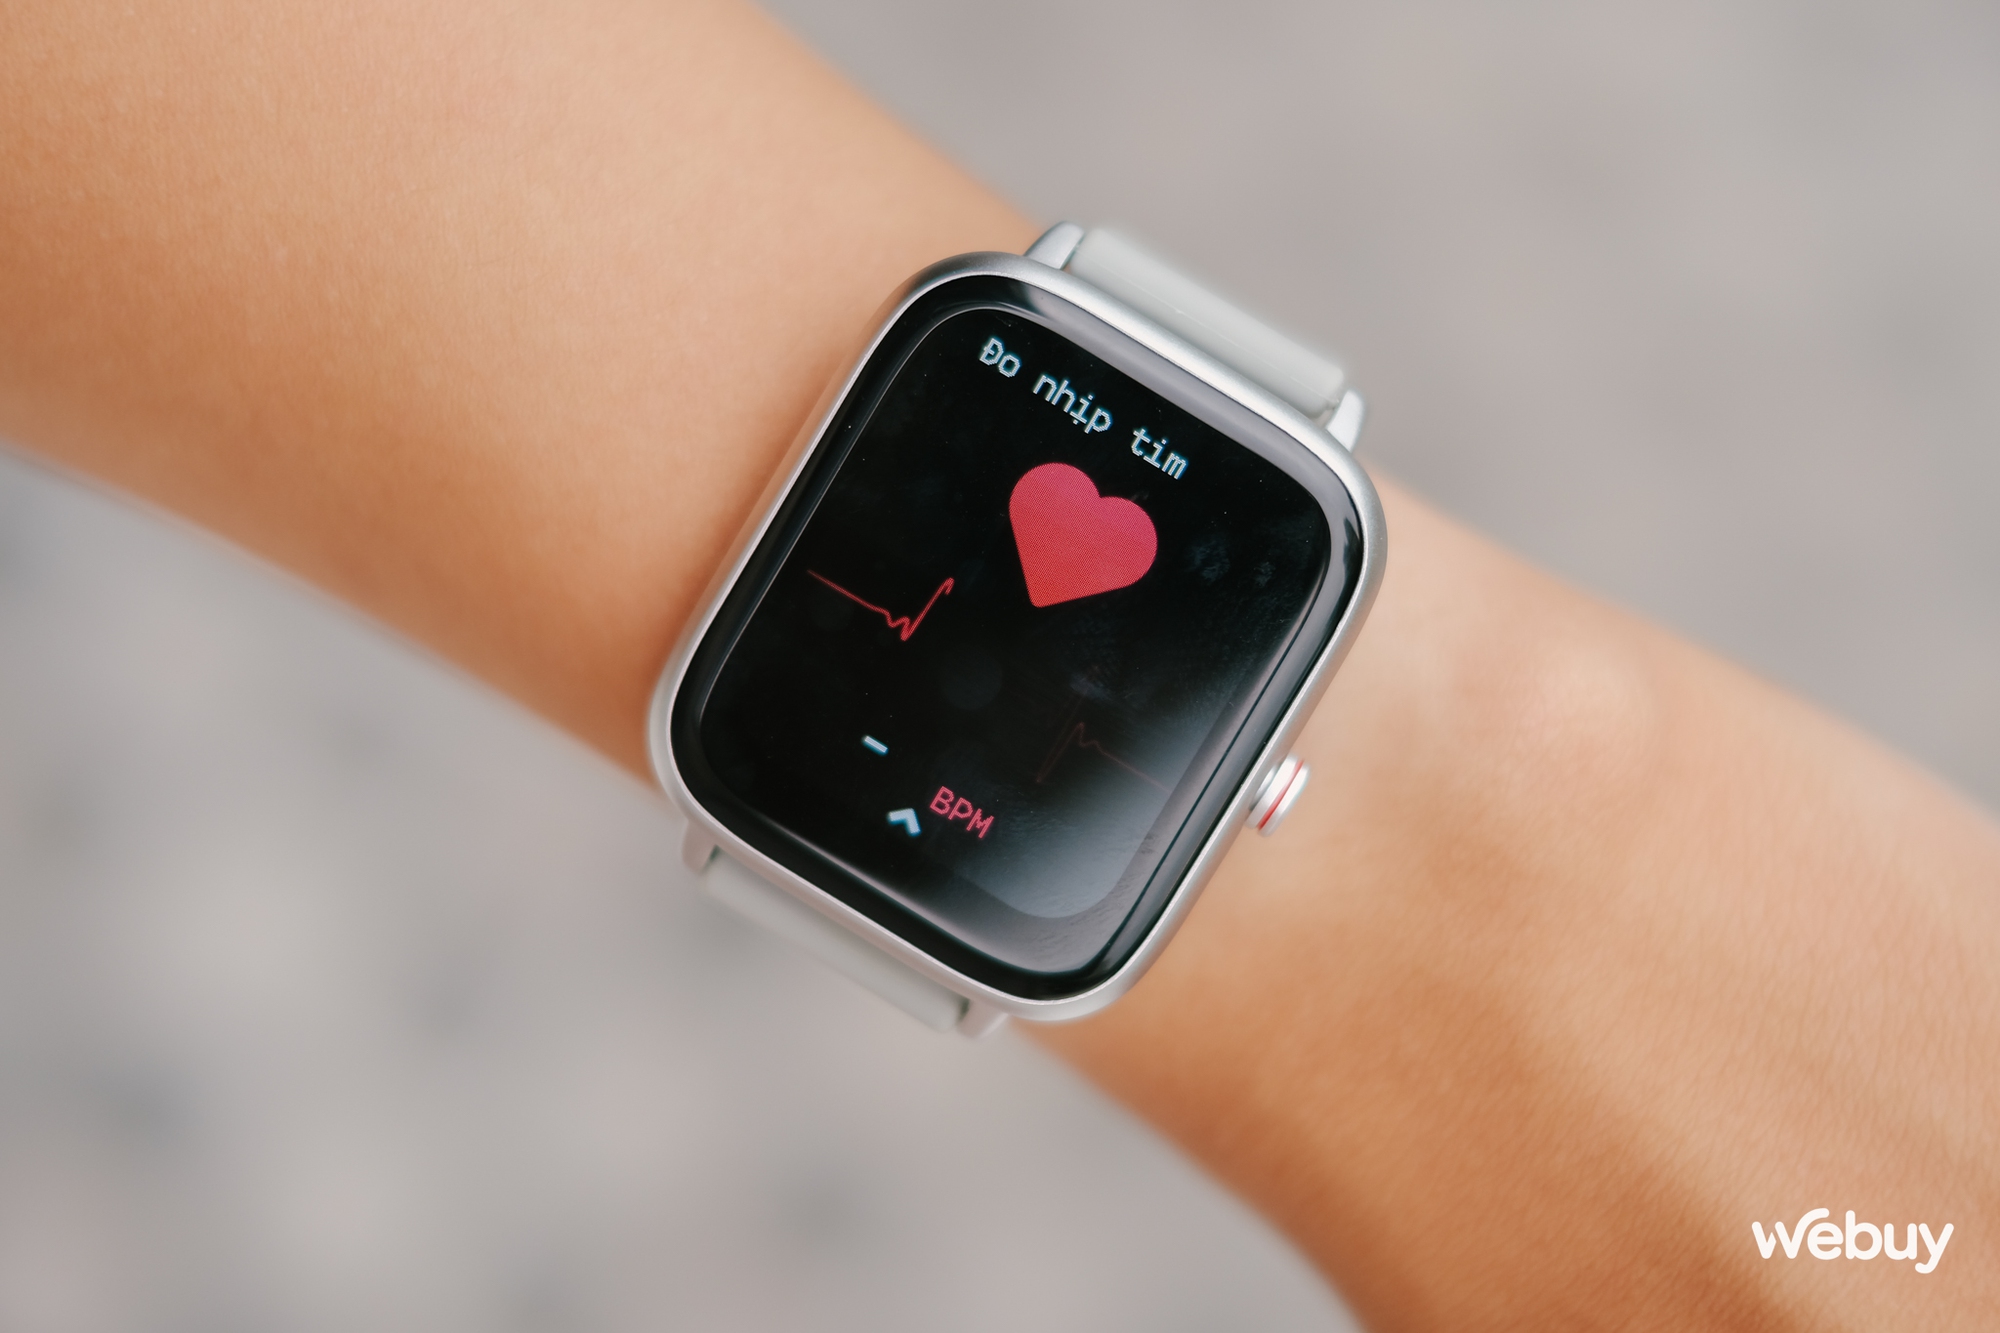 Smartwatch chính hãng giá 490.000 đồng: Thiết kế giống Apple Watch, khung viền nhôm, có loa/mic thoại, pin 7 ngày - Ảnh 7.